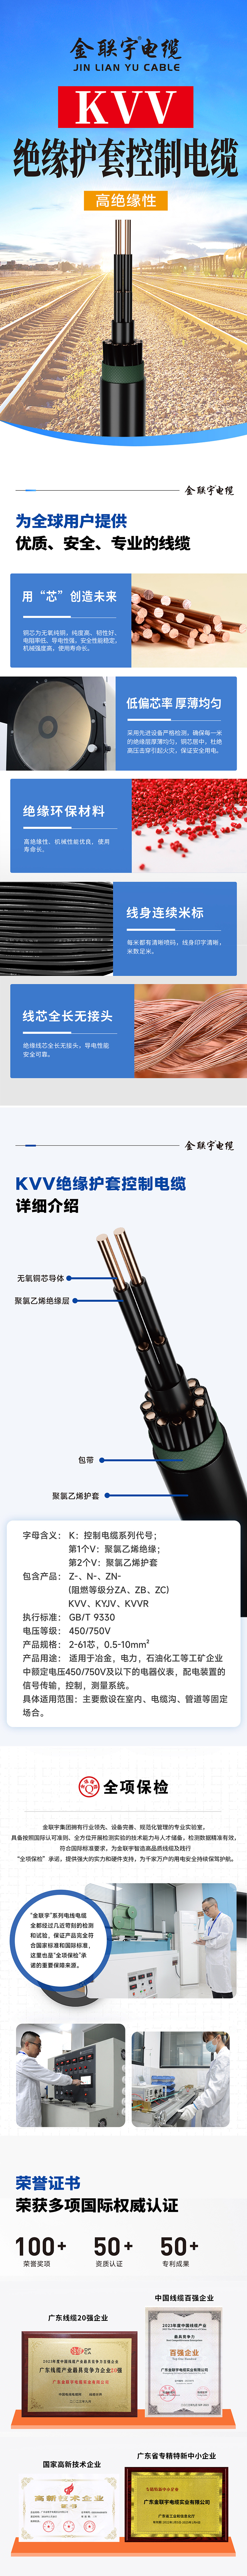 详情页-控制电缆KVV.jpg